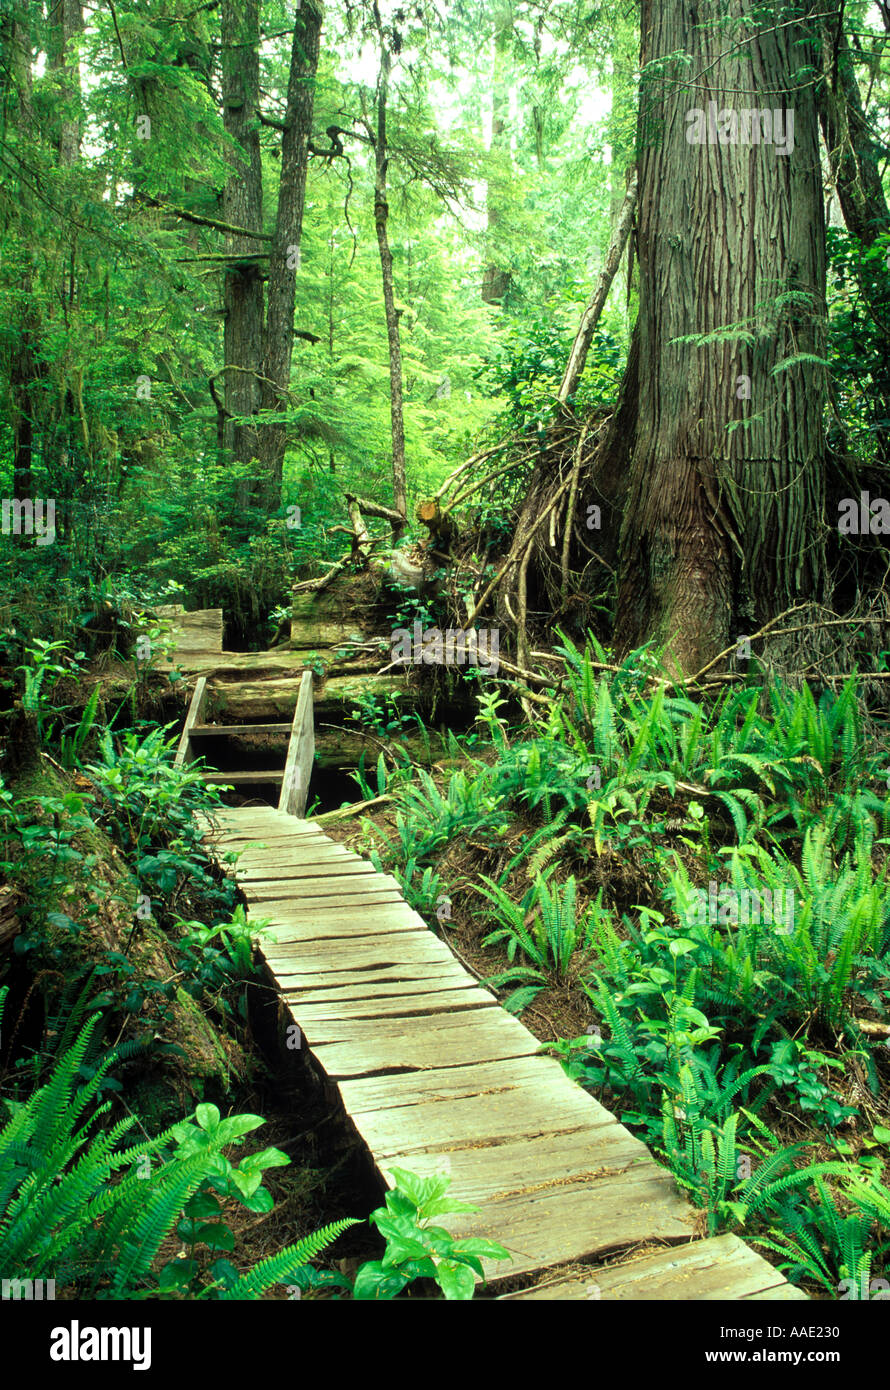 Paseo de madera canadiense de corte a través de bosque lluvioso en la isla desierta conocida como Isla Mears situado cerca de Tofino, Vancouver Island, Canadá Foto de stock